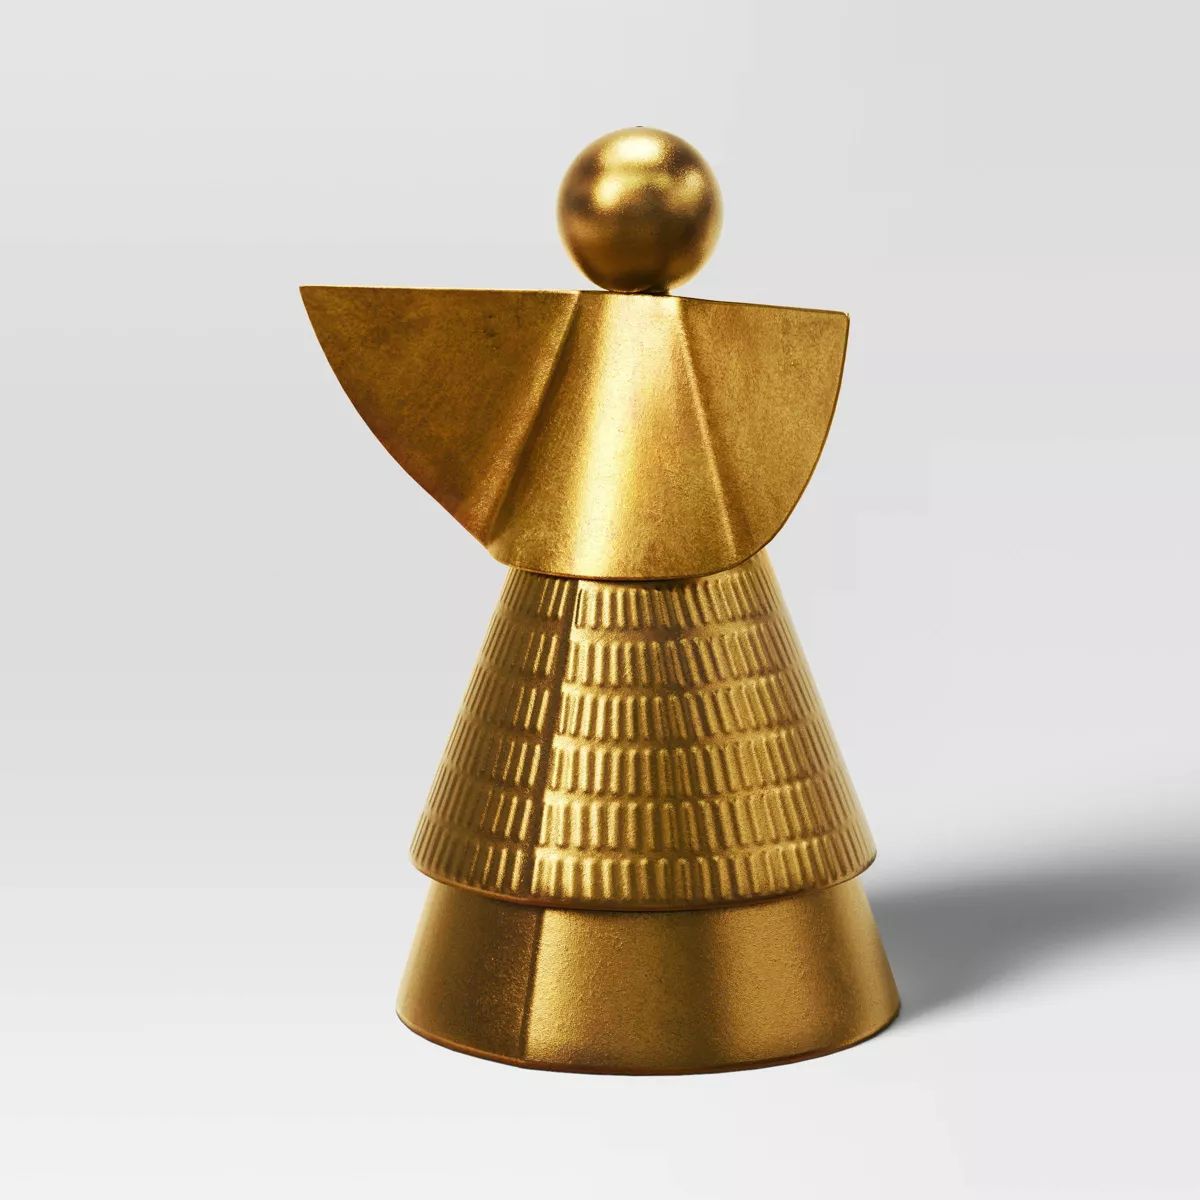 8" Metal Angel Christmas Figurine - Wondershop™ Gold | Target